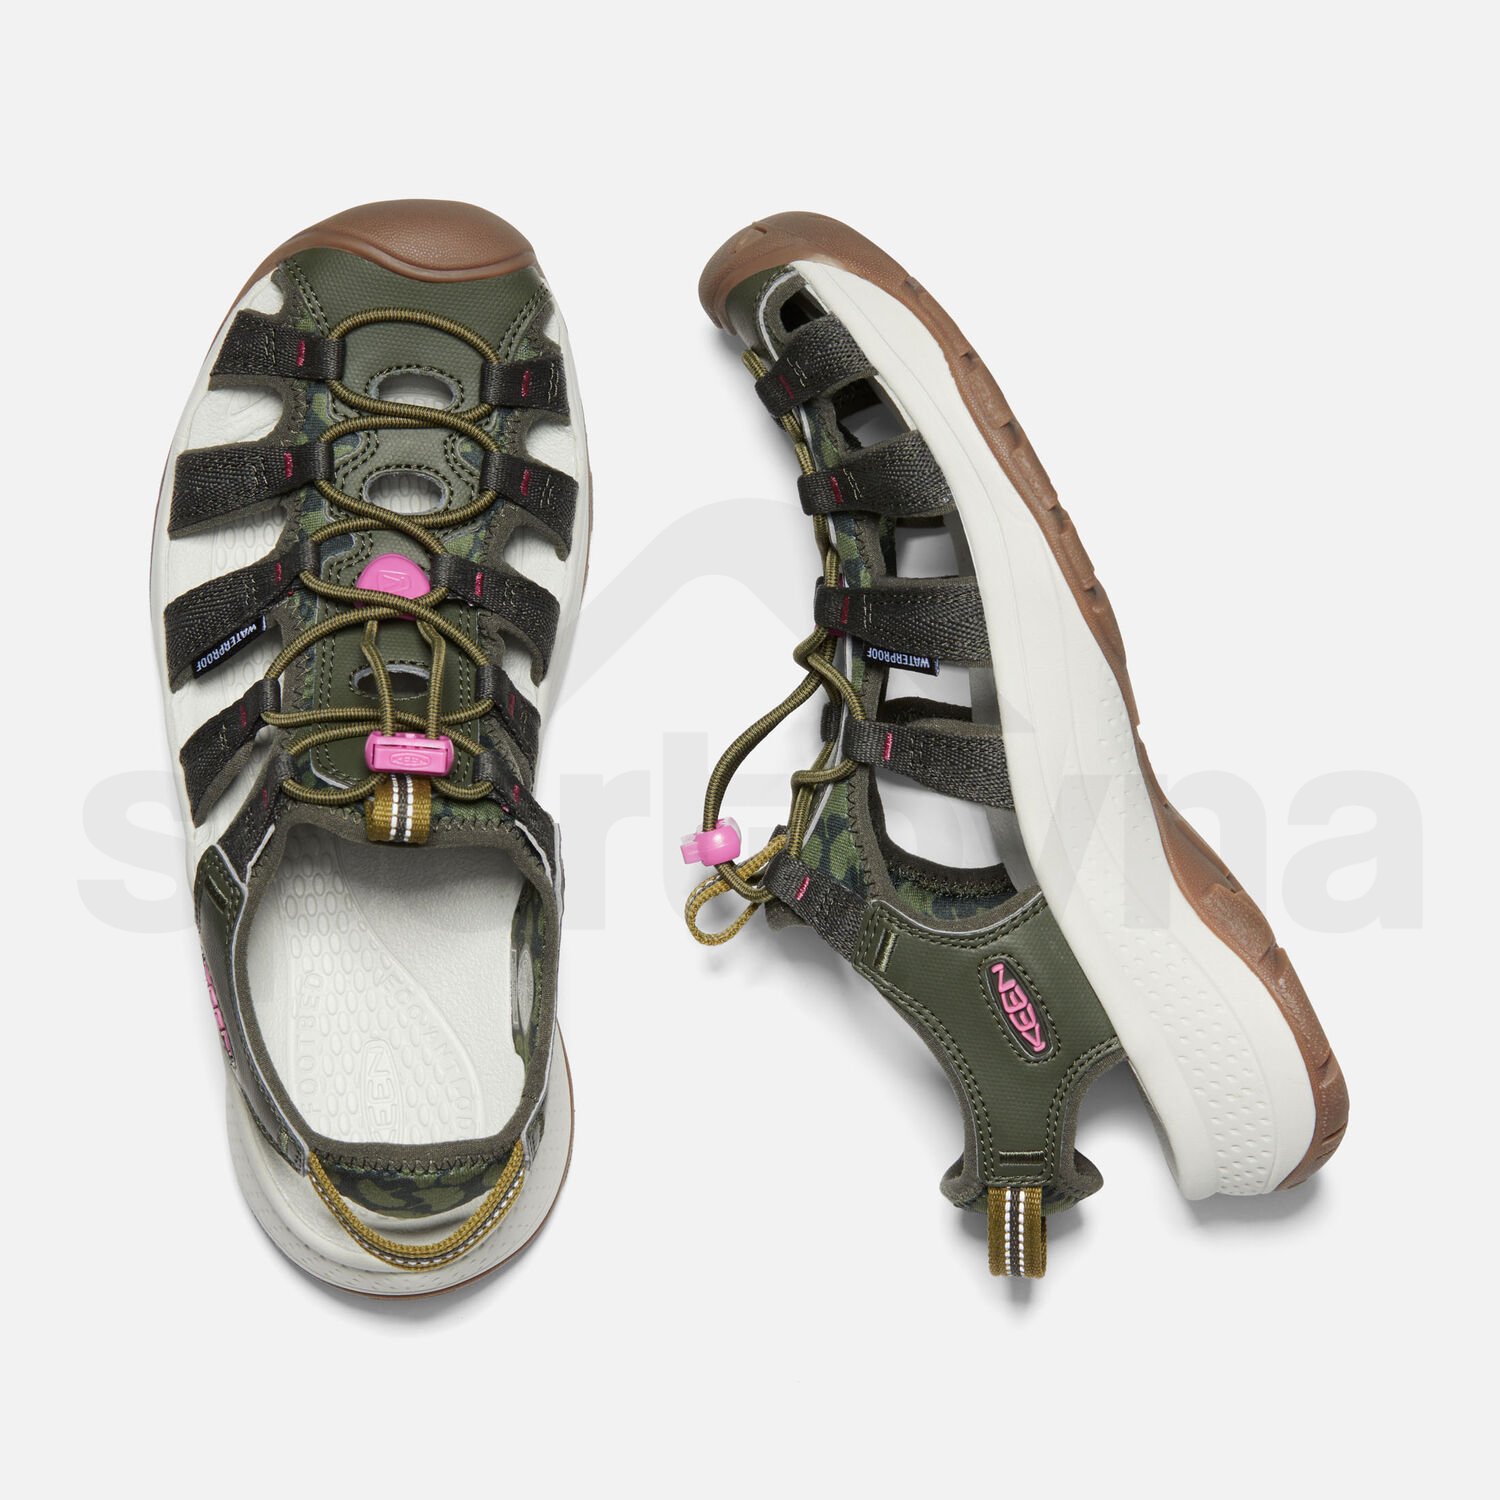 Obuv - sandály Keen Astoria West Sandal W - zelená/fialová